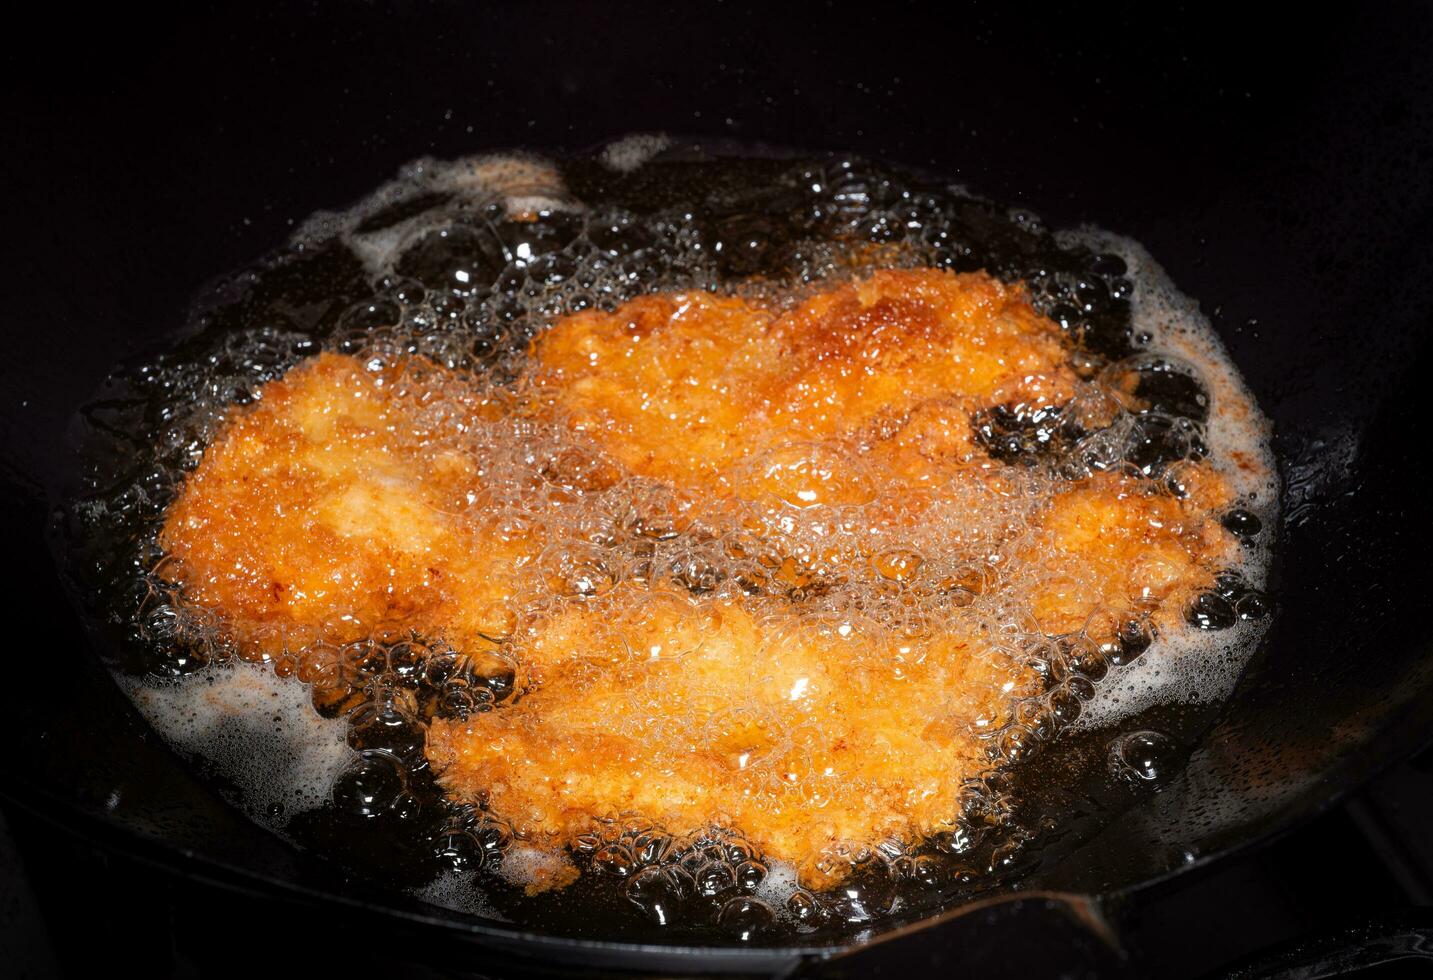 panerad friterad kyckling. livsmedel friterad i kokande olja i en kinesisk wok. matlagning förbi fräsning i varm olja. bubblor dyka upp från fräsning foto